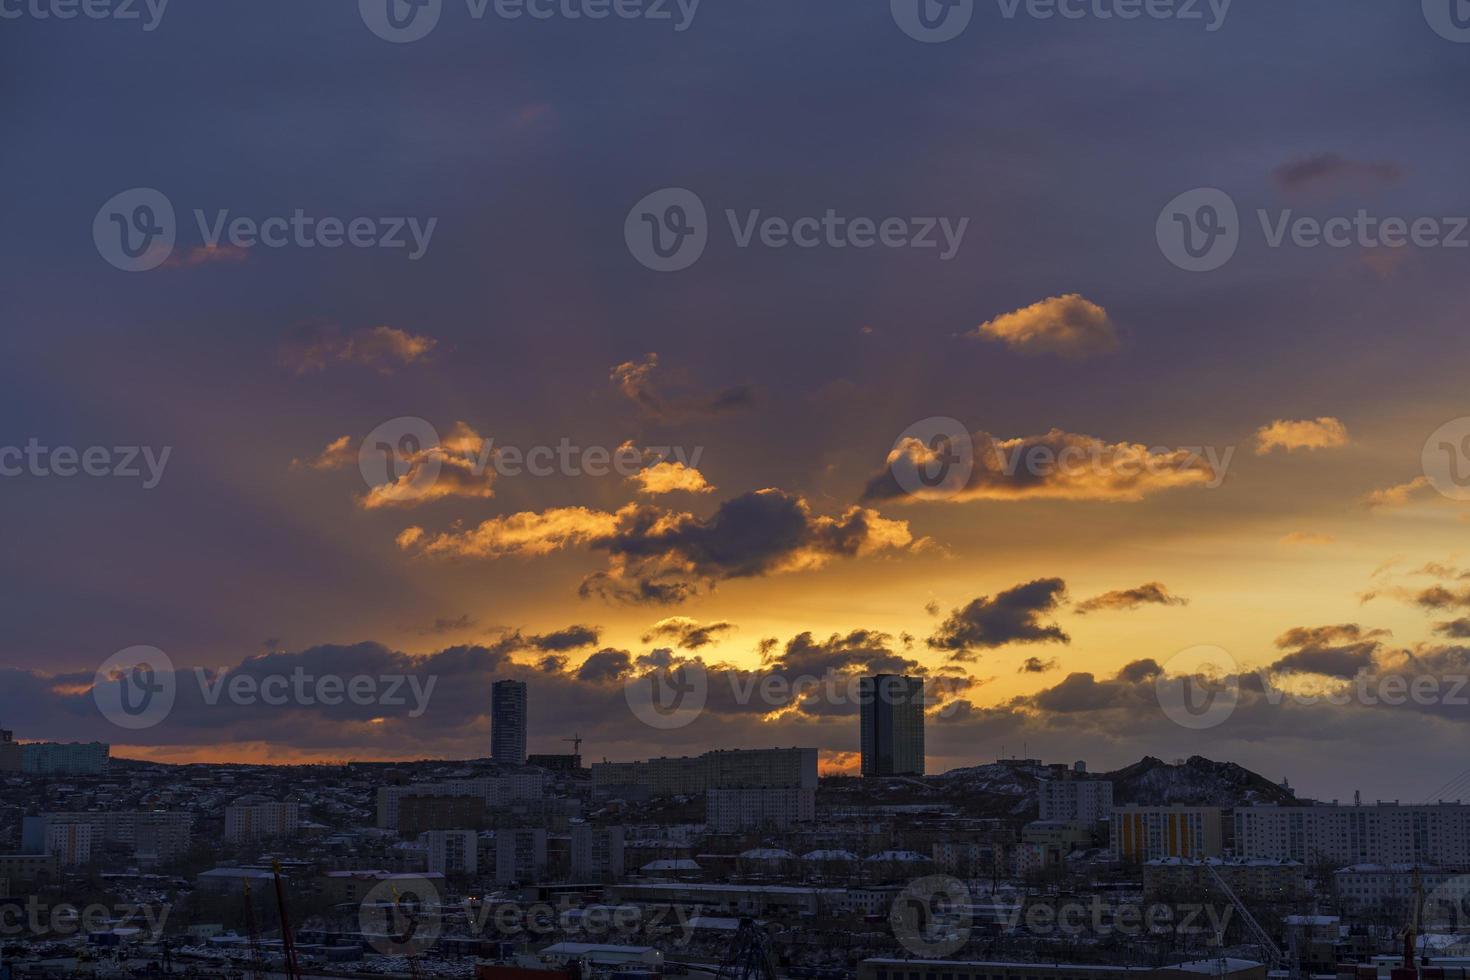 een stadsgezicht bij zonsopgang met de stralen van de zon. vladivostok, rusland foto